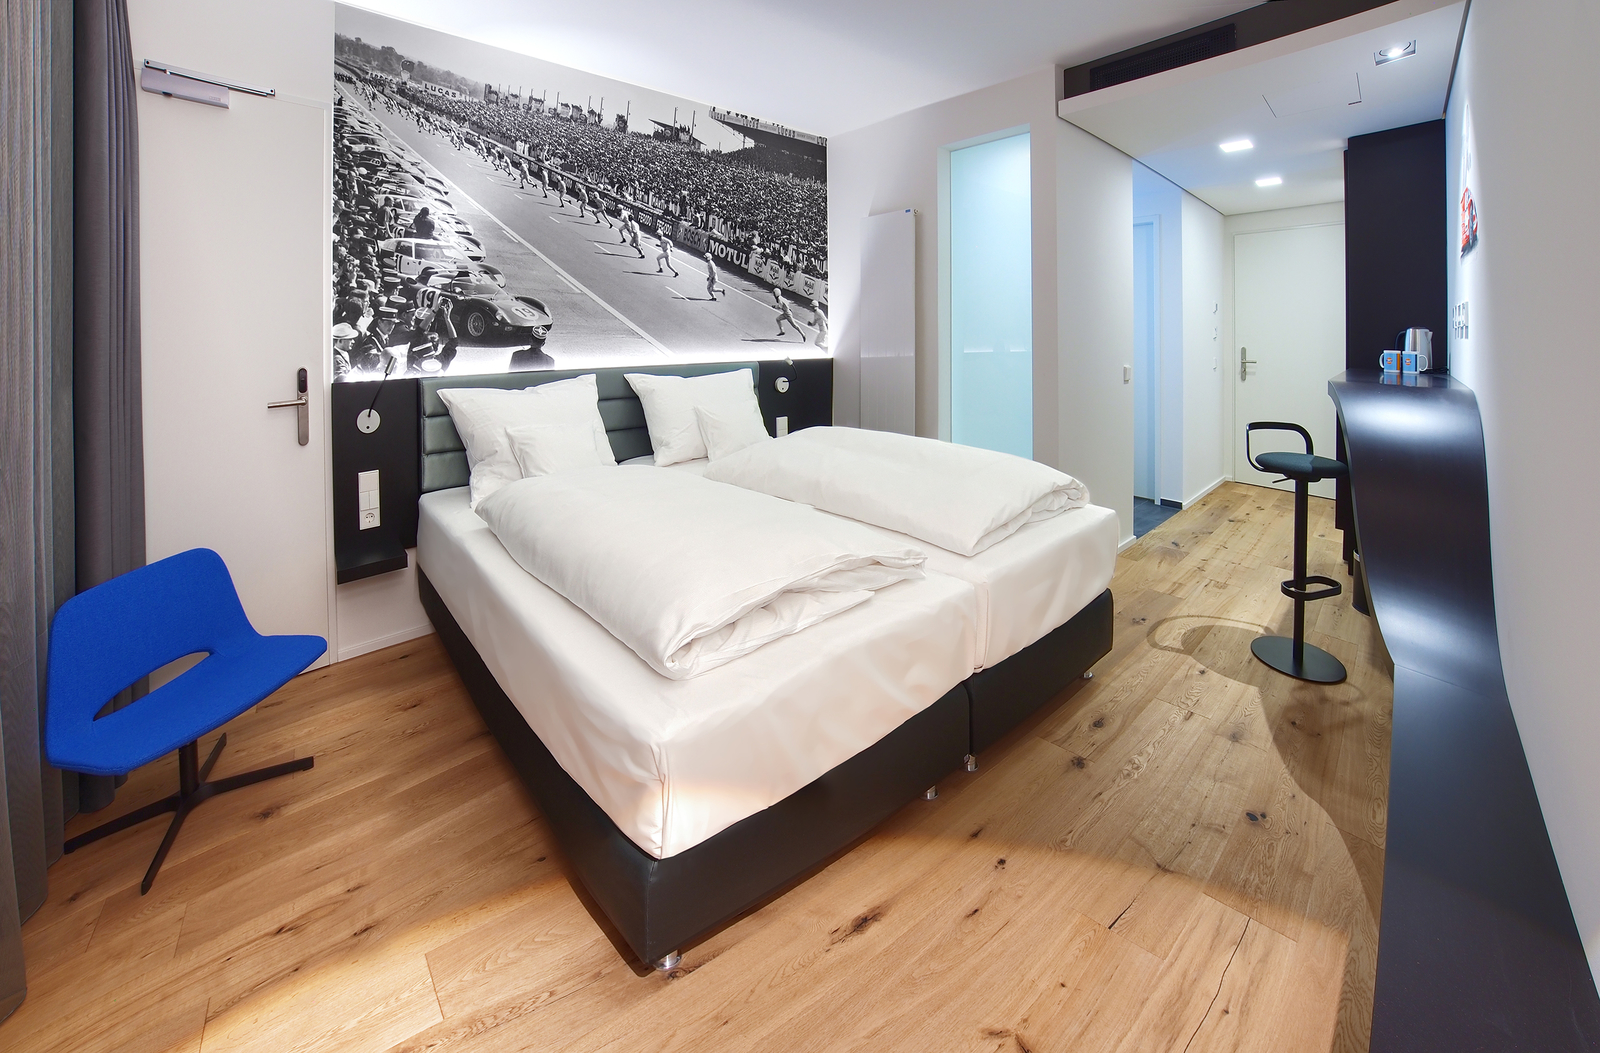 Modernes Schlafzimmer mit gemütlichem Doppelbett unter einem schwarz-weiß Bild von einem Autorennen